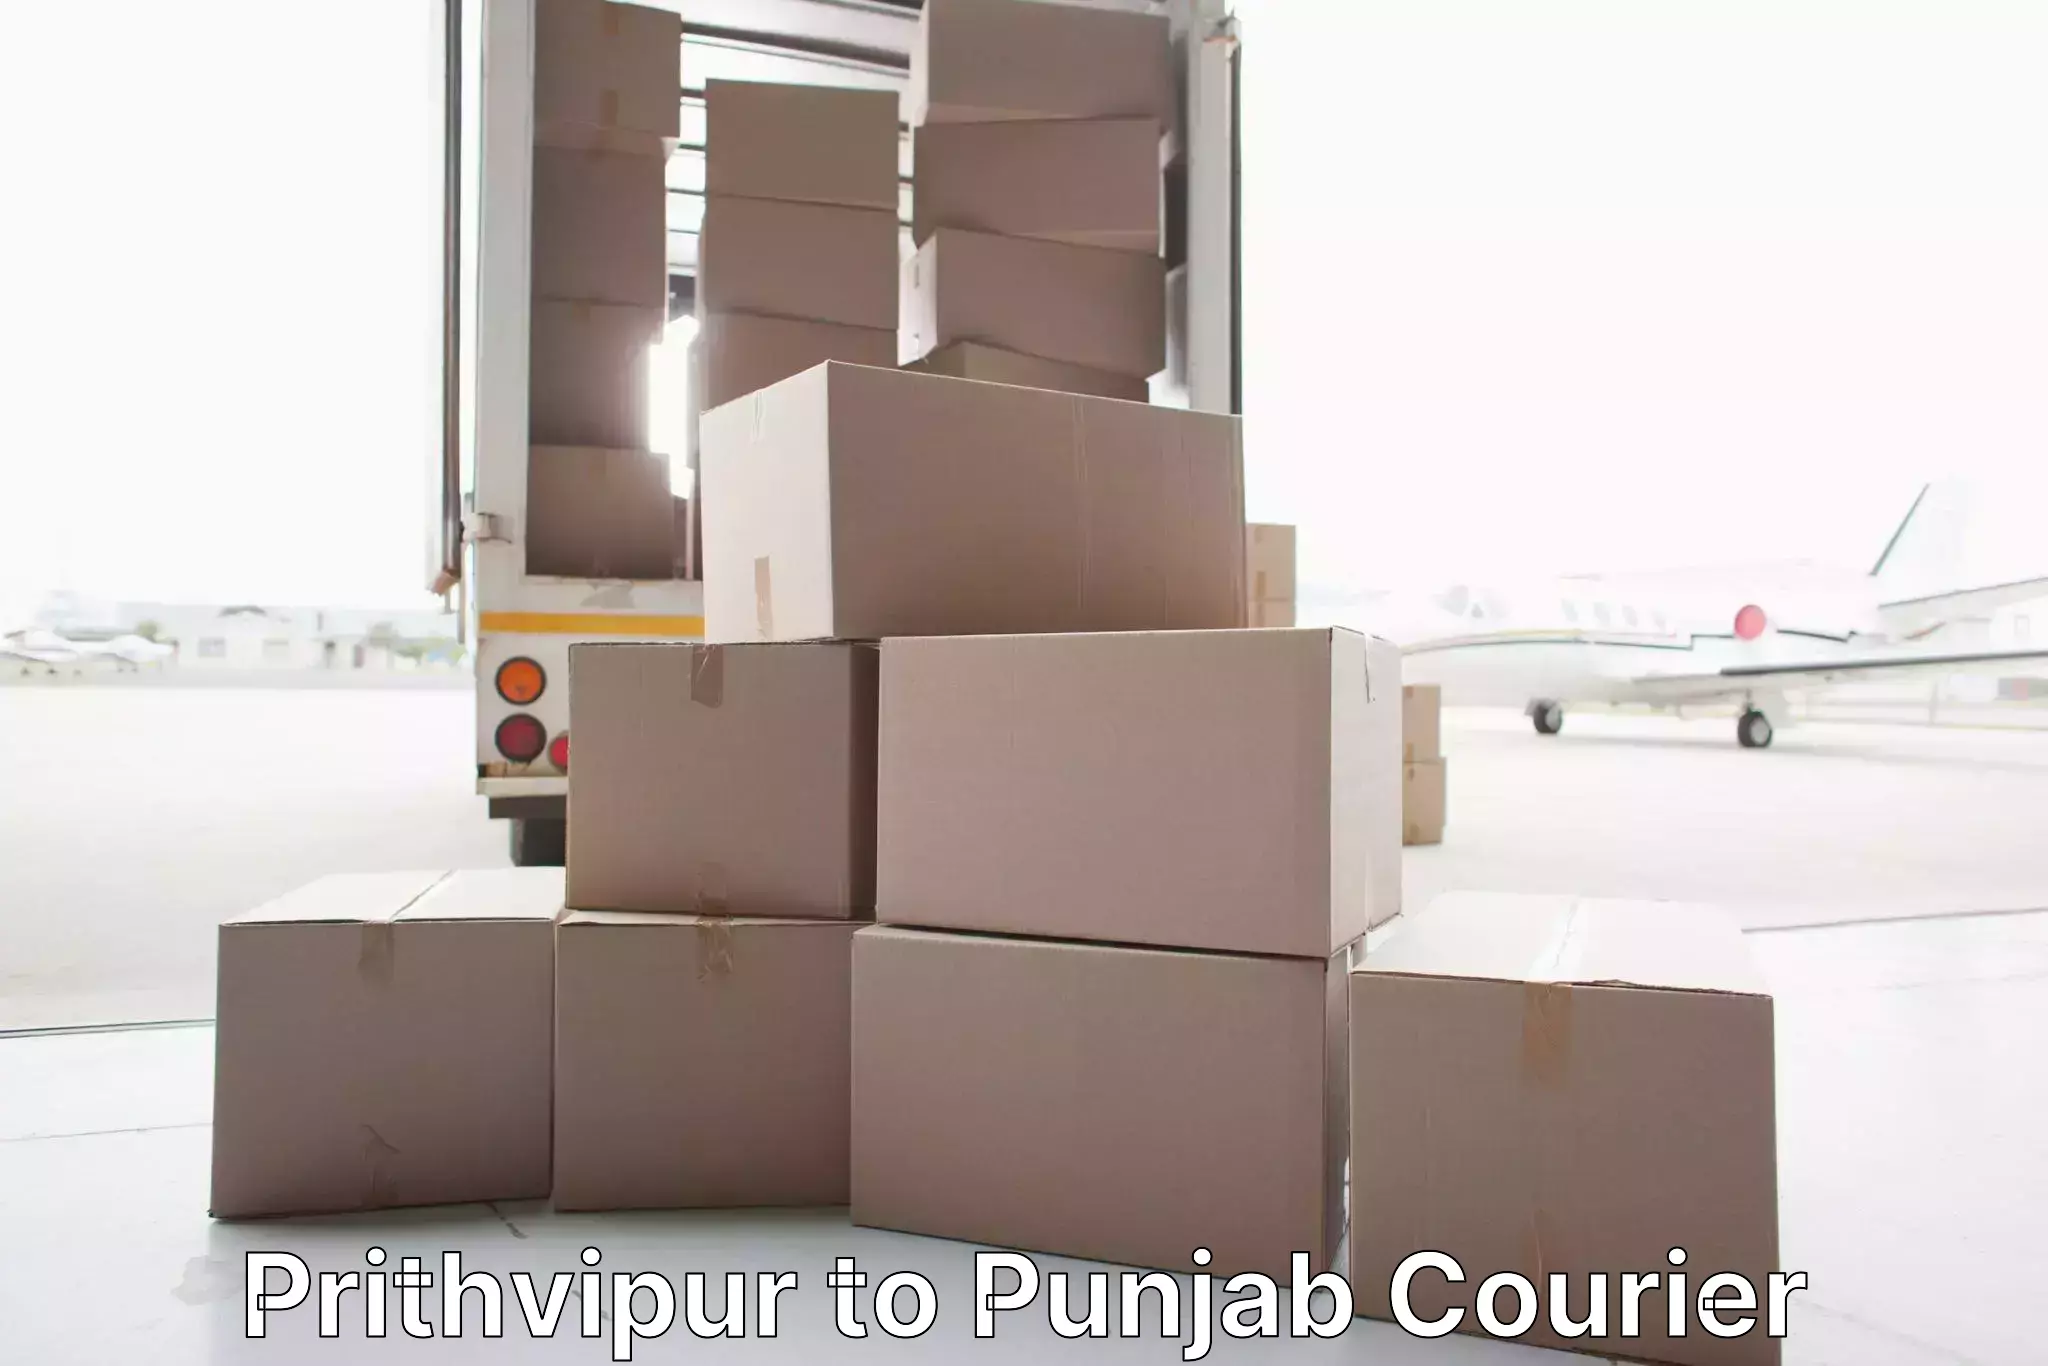 Household goods transport service Prithvipur to Mandi Gobindgarh